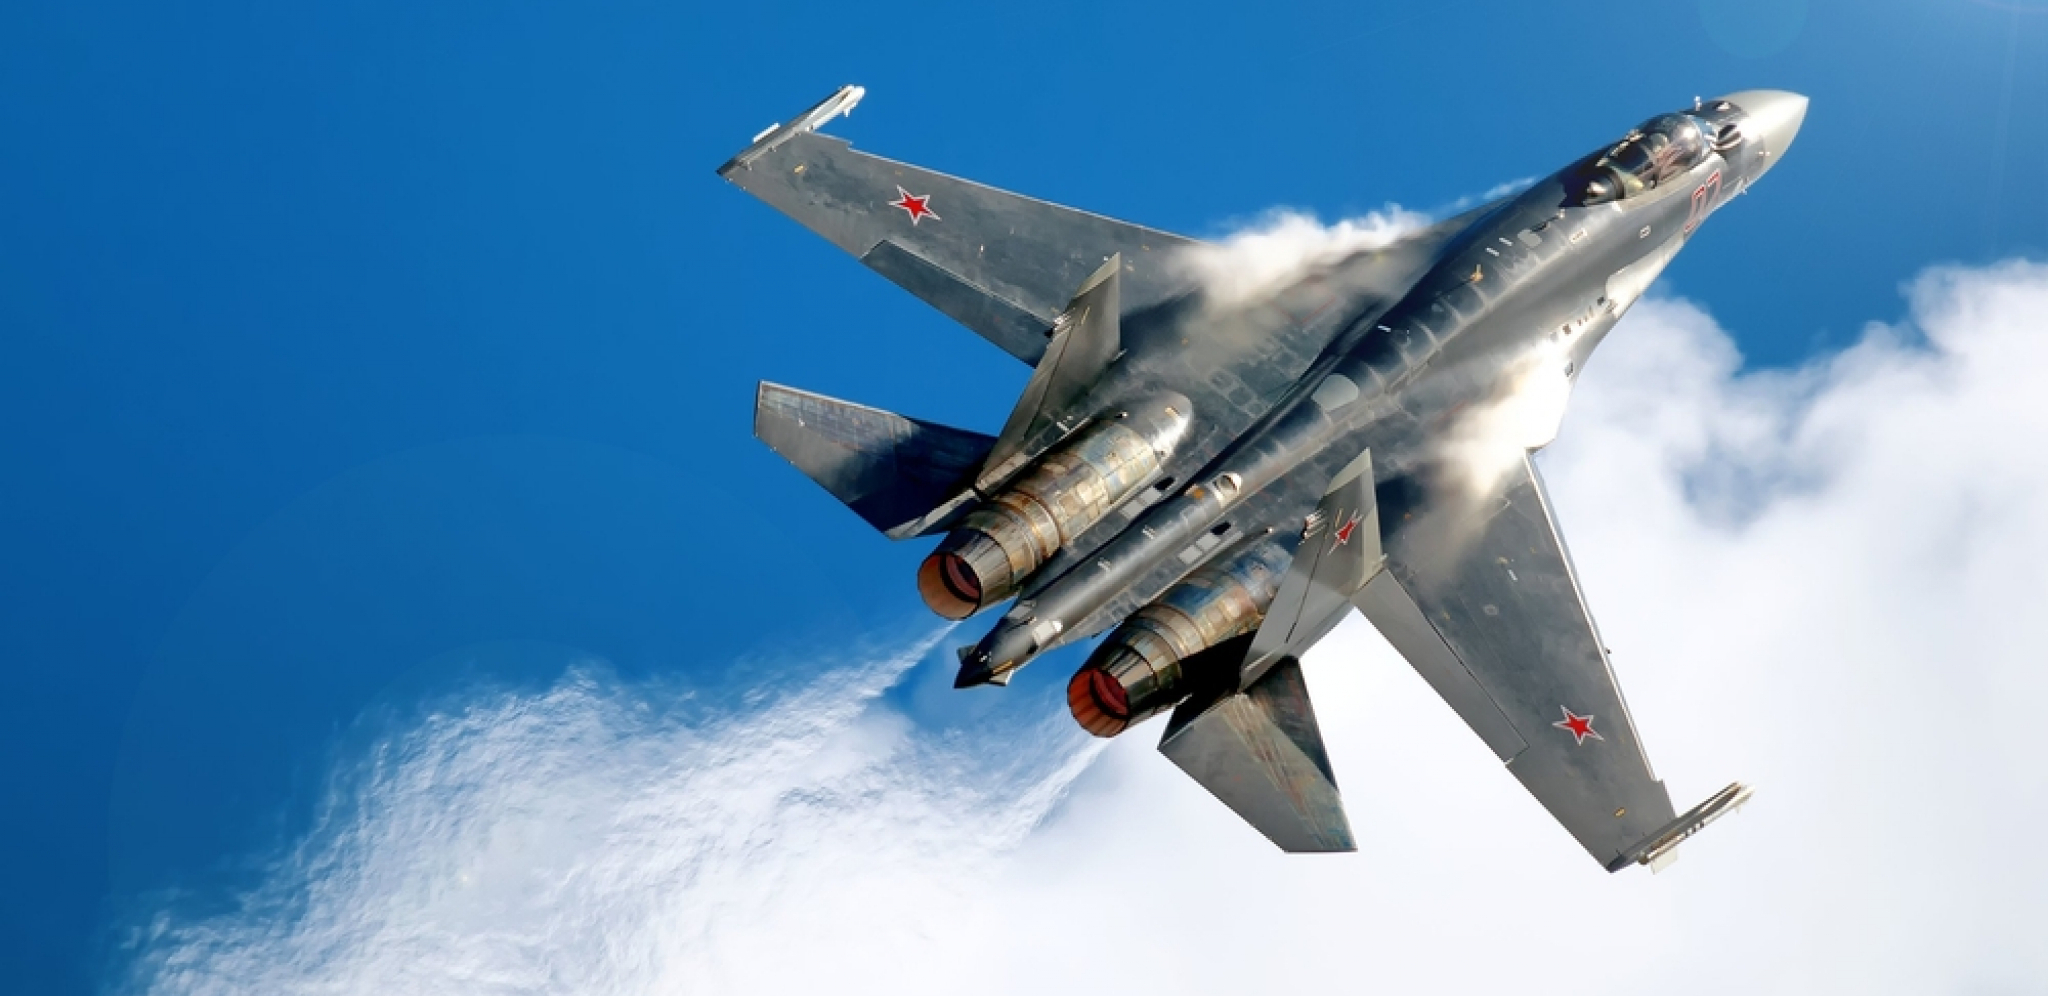 STIŽE 64 KOMADA IZ RUSIJE Još jedna država kupuje lovce Su-35 (VIDEO)